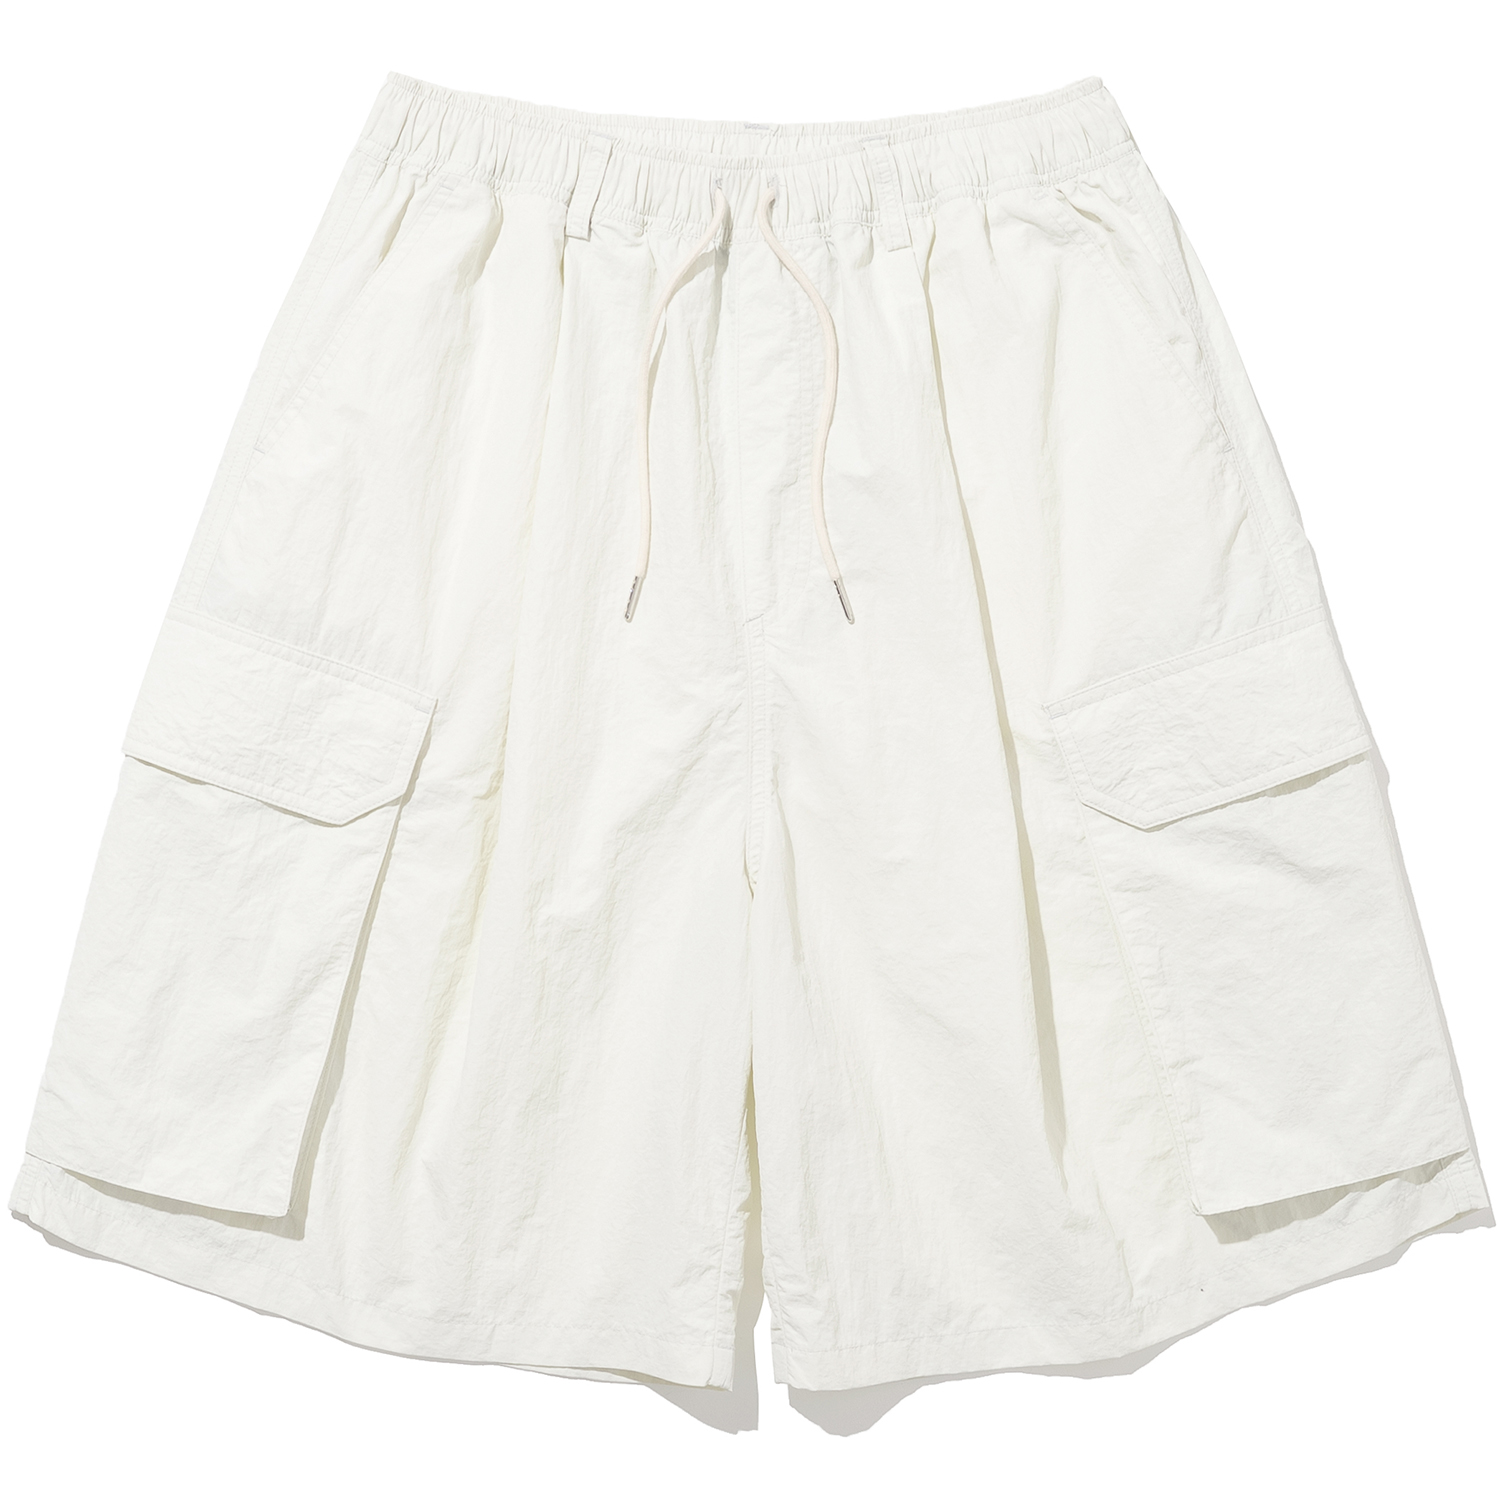 Nylon Big Pocket Wide Shorts - Ivory,NOT4NERD